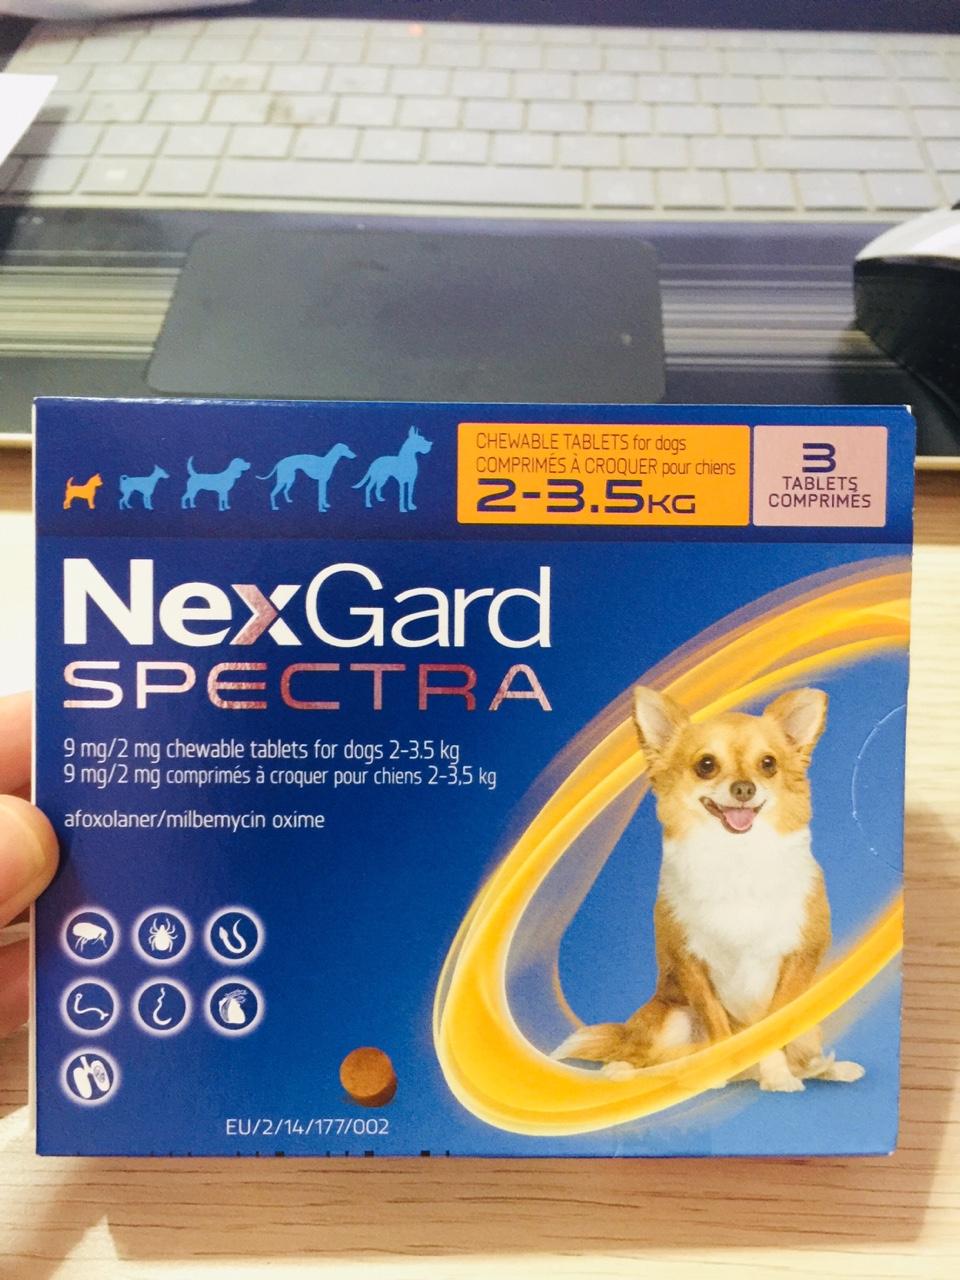 [HCM]Nexgard spectra cho chó 2-3.5kg